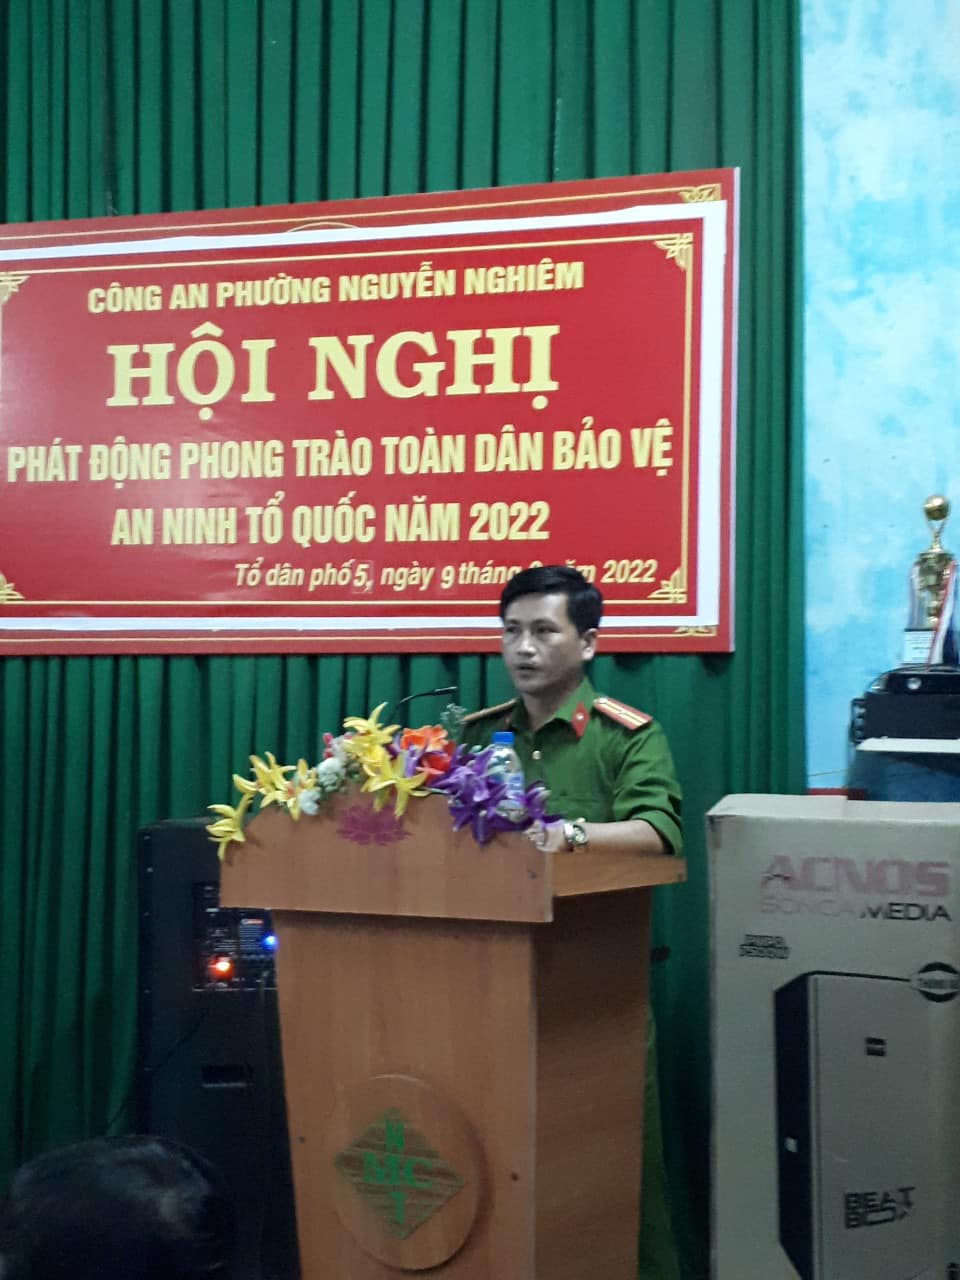 Công an phường Nguyễn Nghiêm tổ chức phát động phong trào toàn dân bảo vệ an ninh Tổ quốc